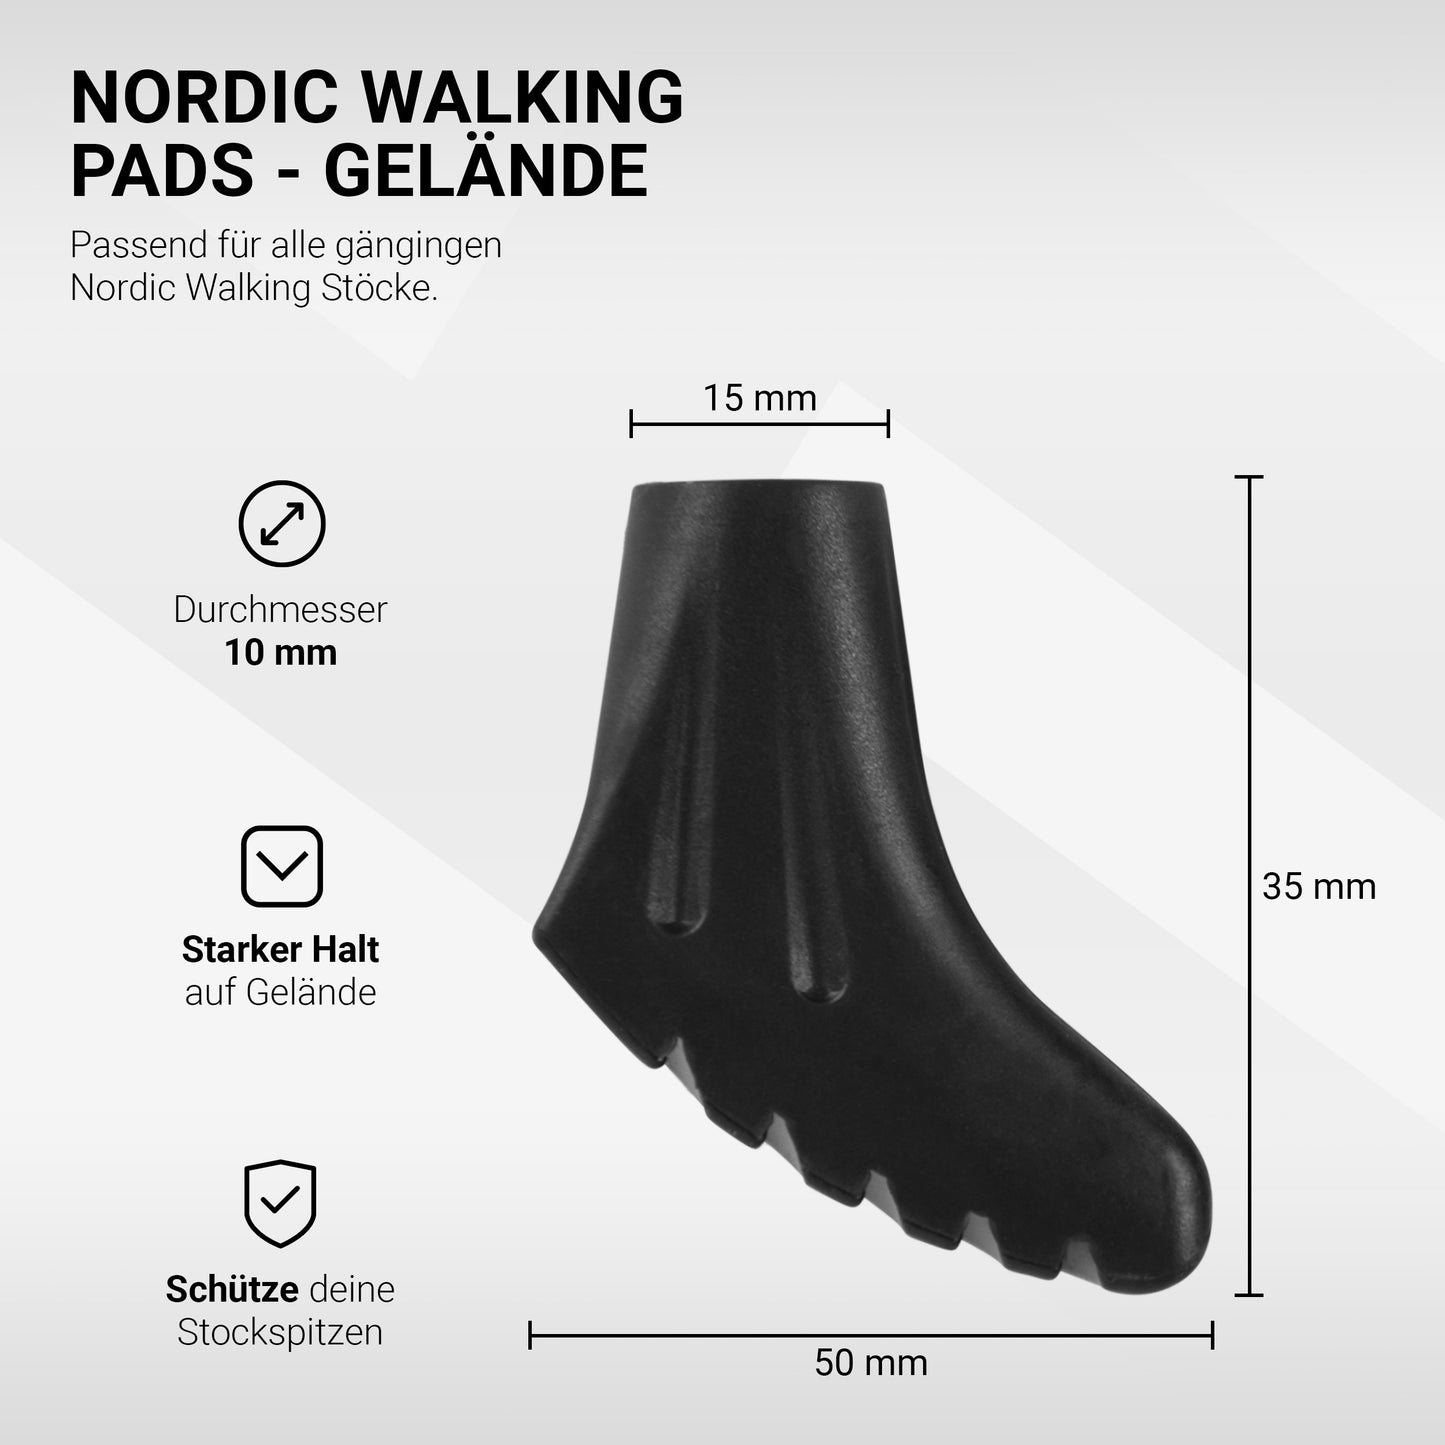 Nordic Walking Pads Gelände